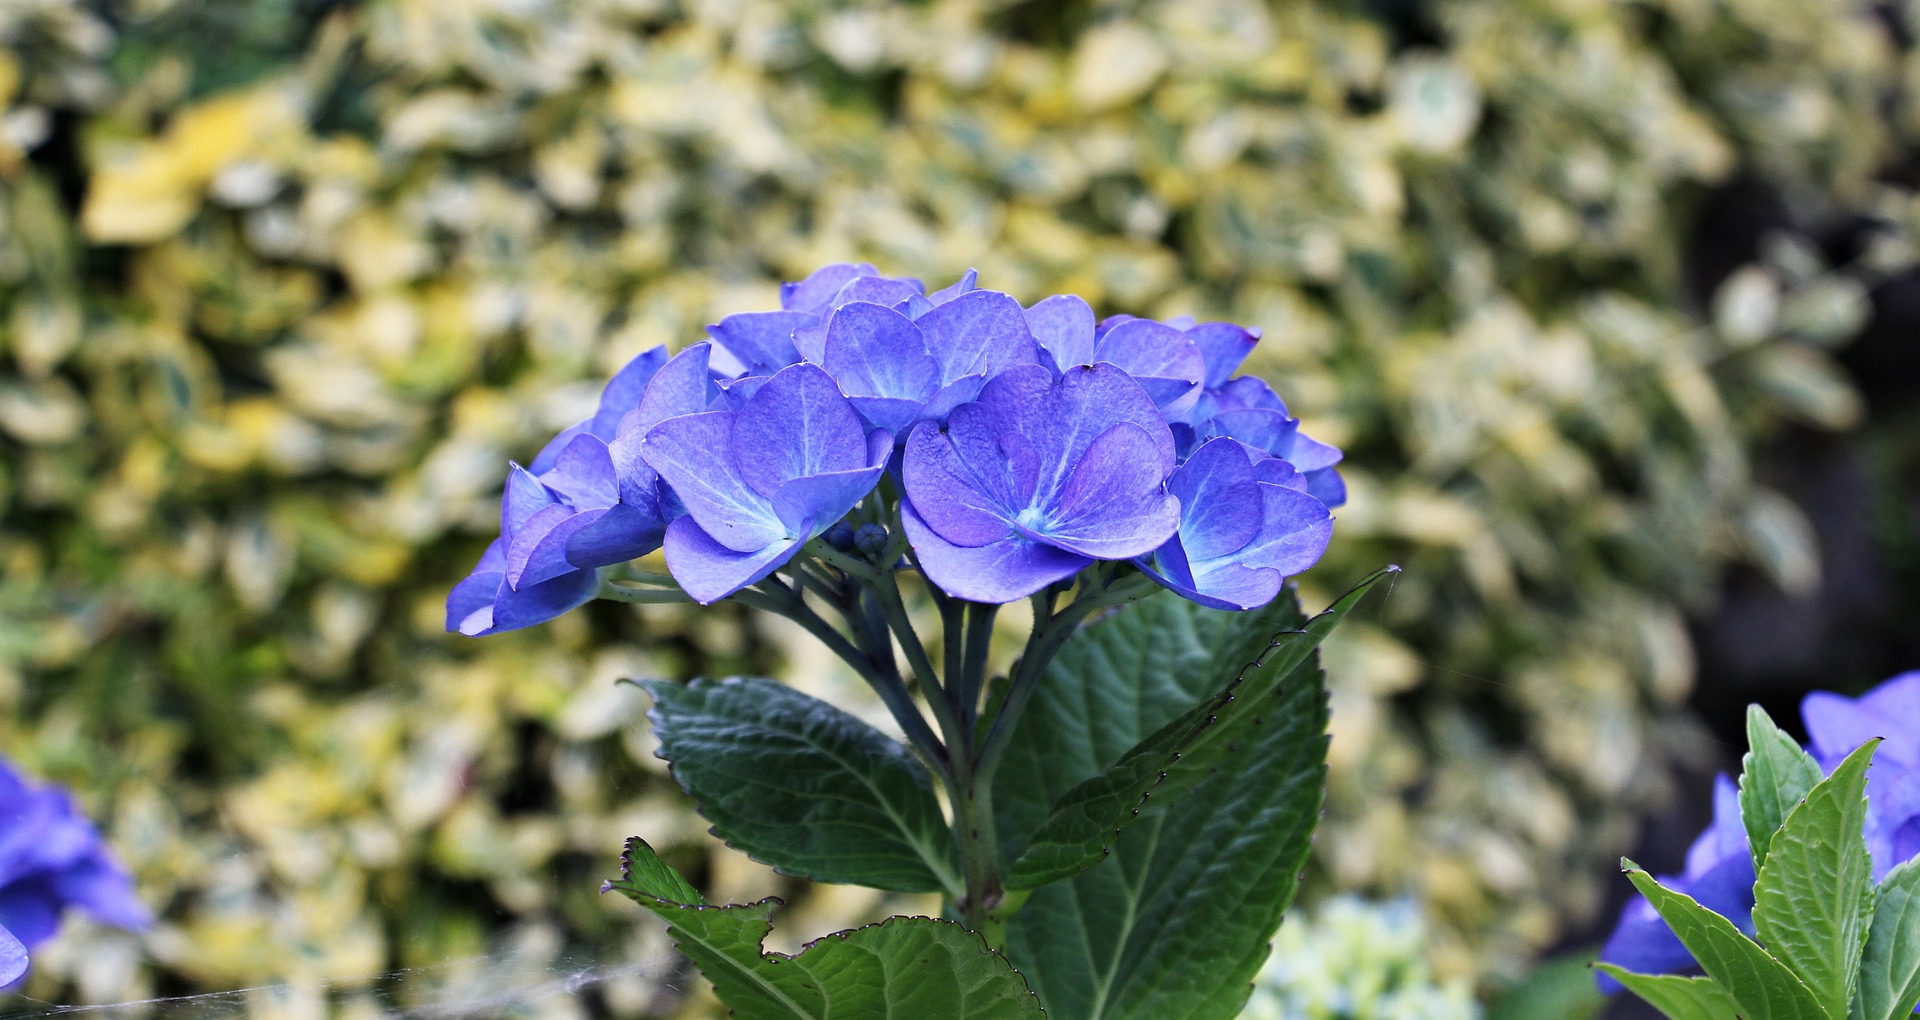 Hydrangea in the garden photo